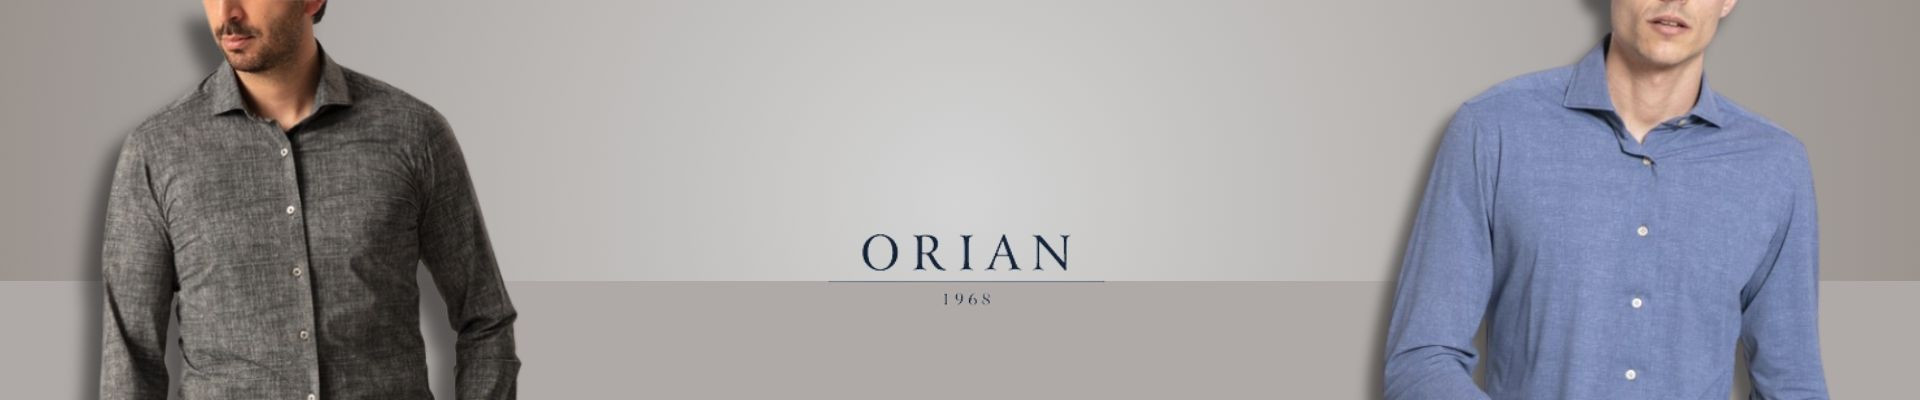 ORIAN